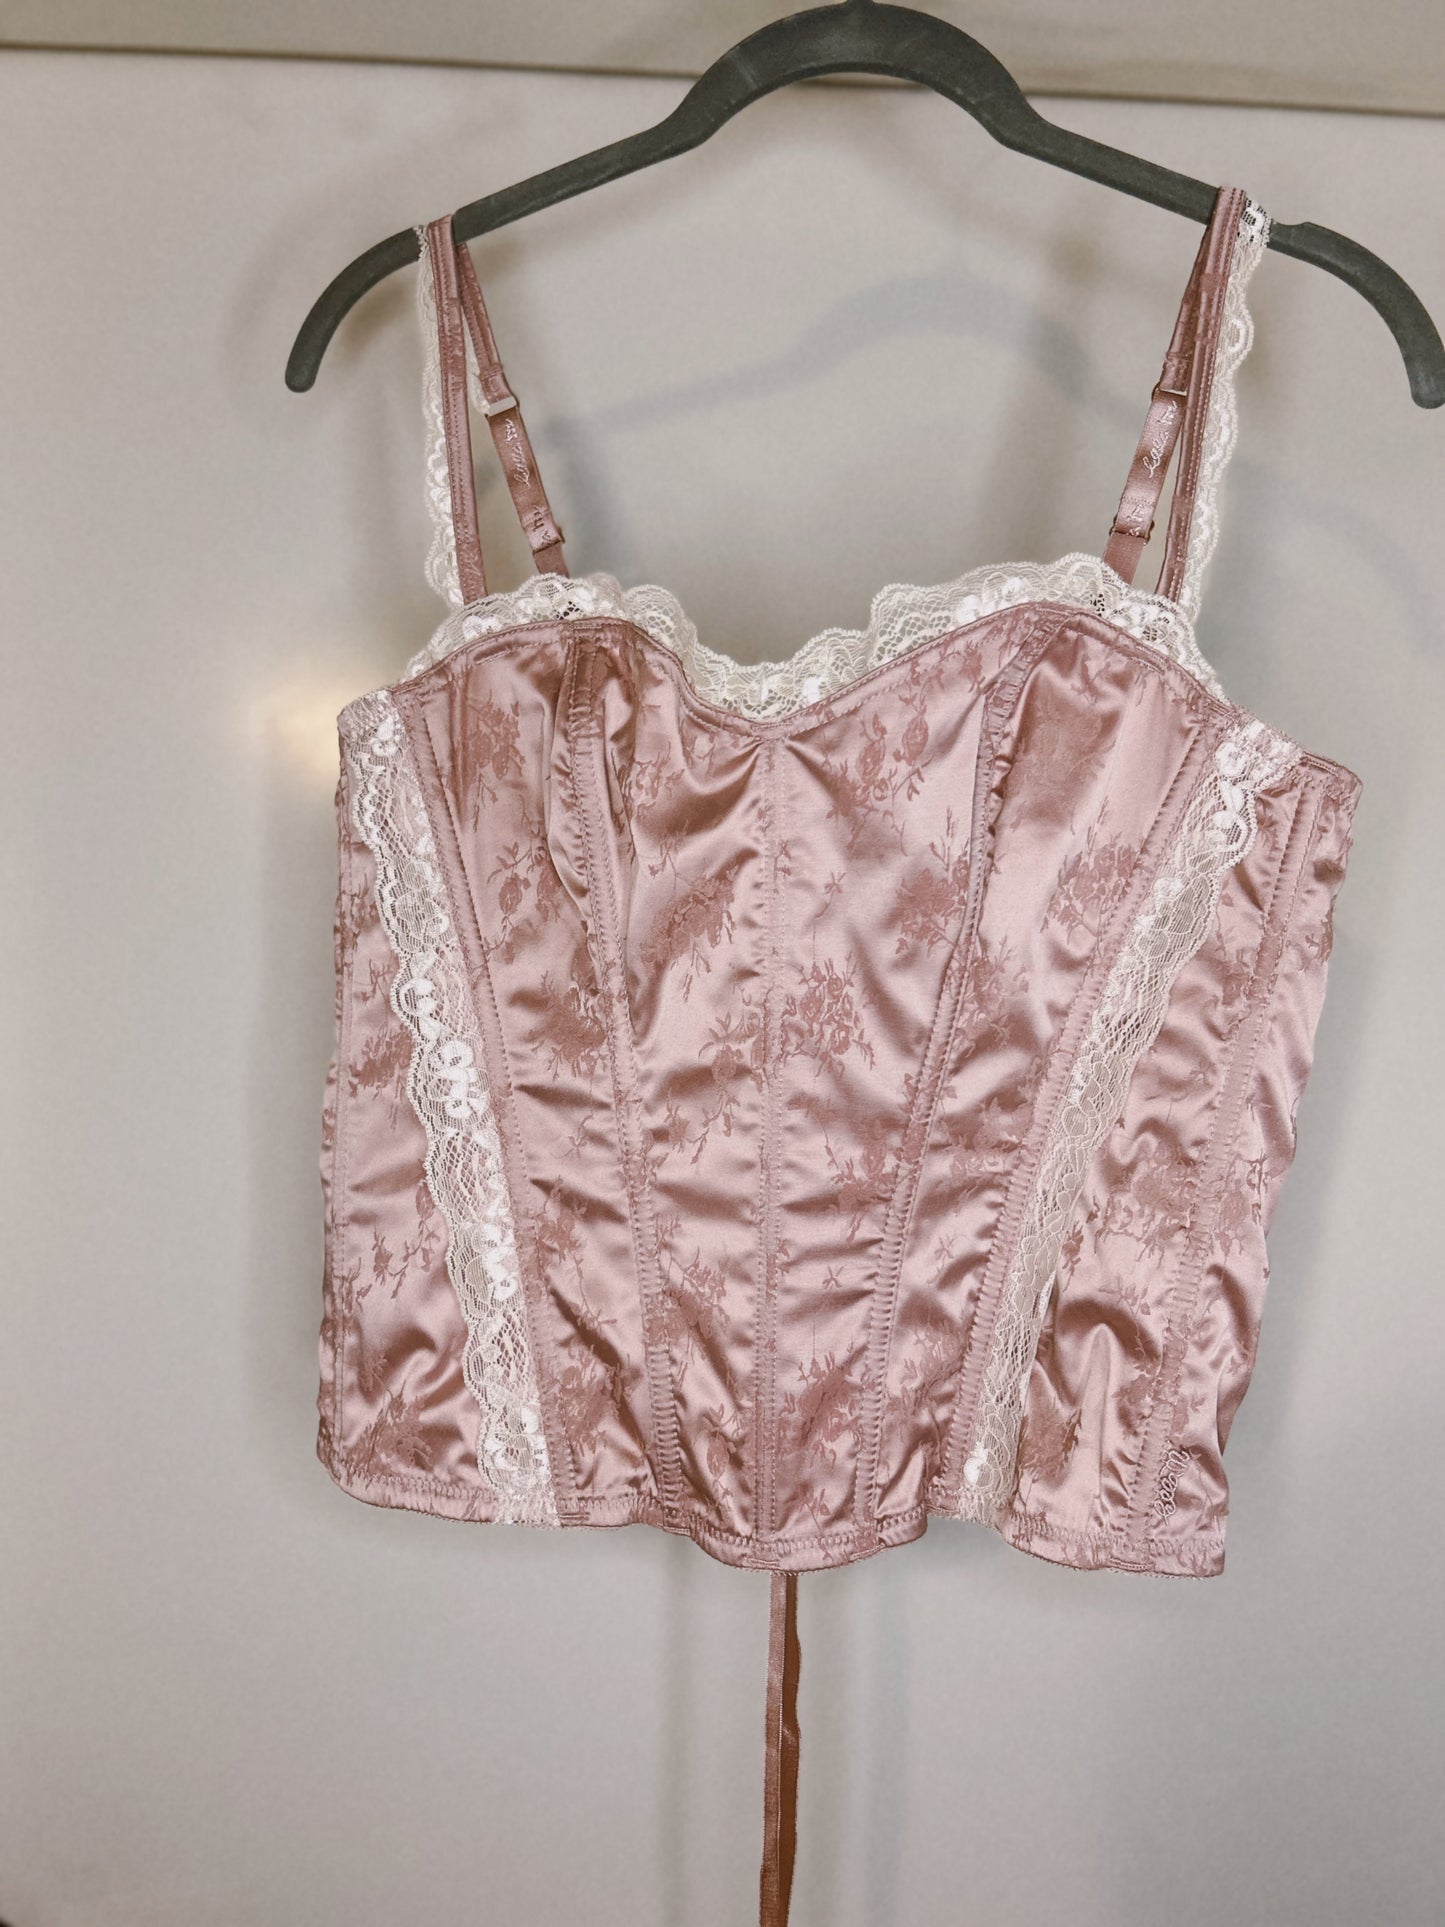 Vintage pink corset top